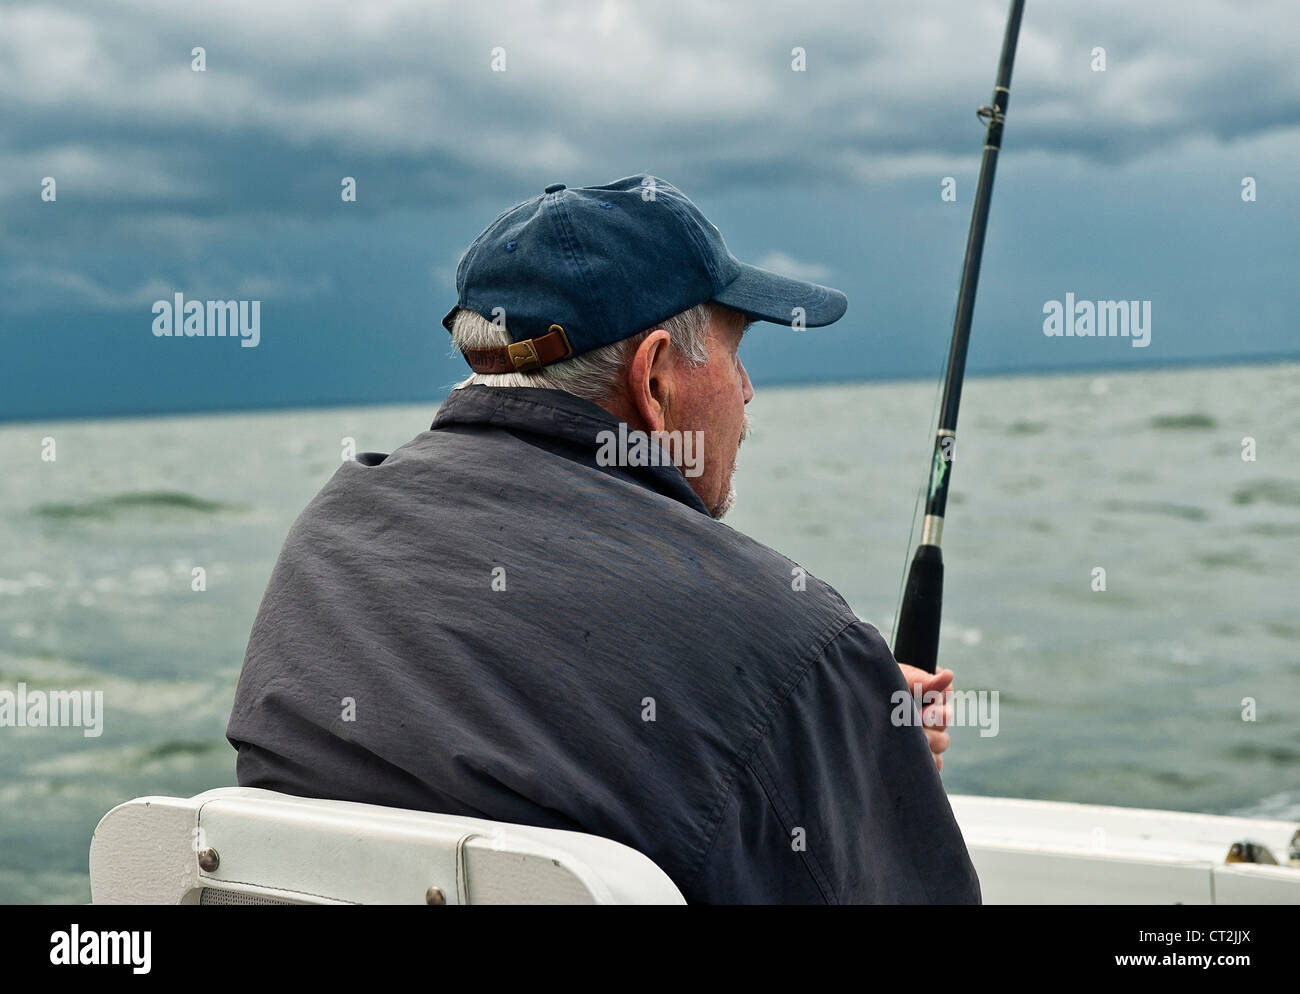 El hombre desde un barco de pesca deportiva. Foto de stock